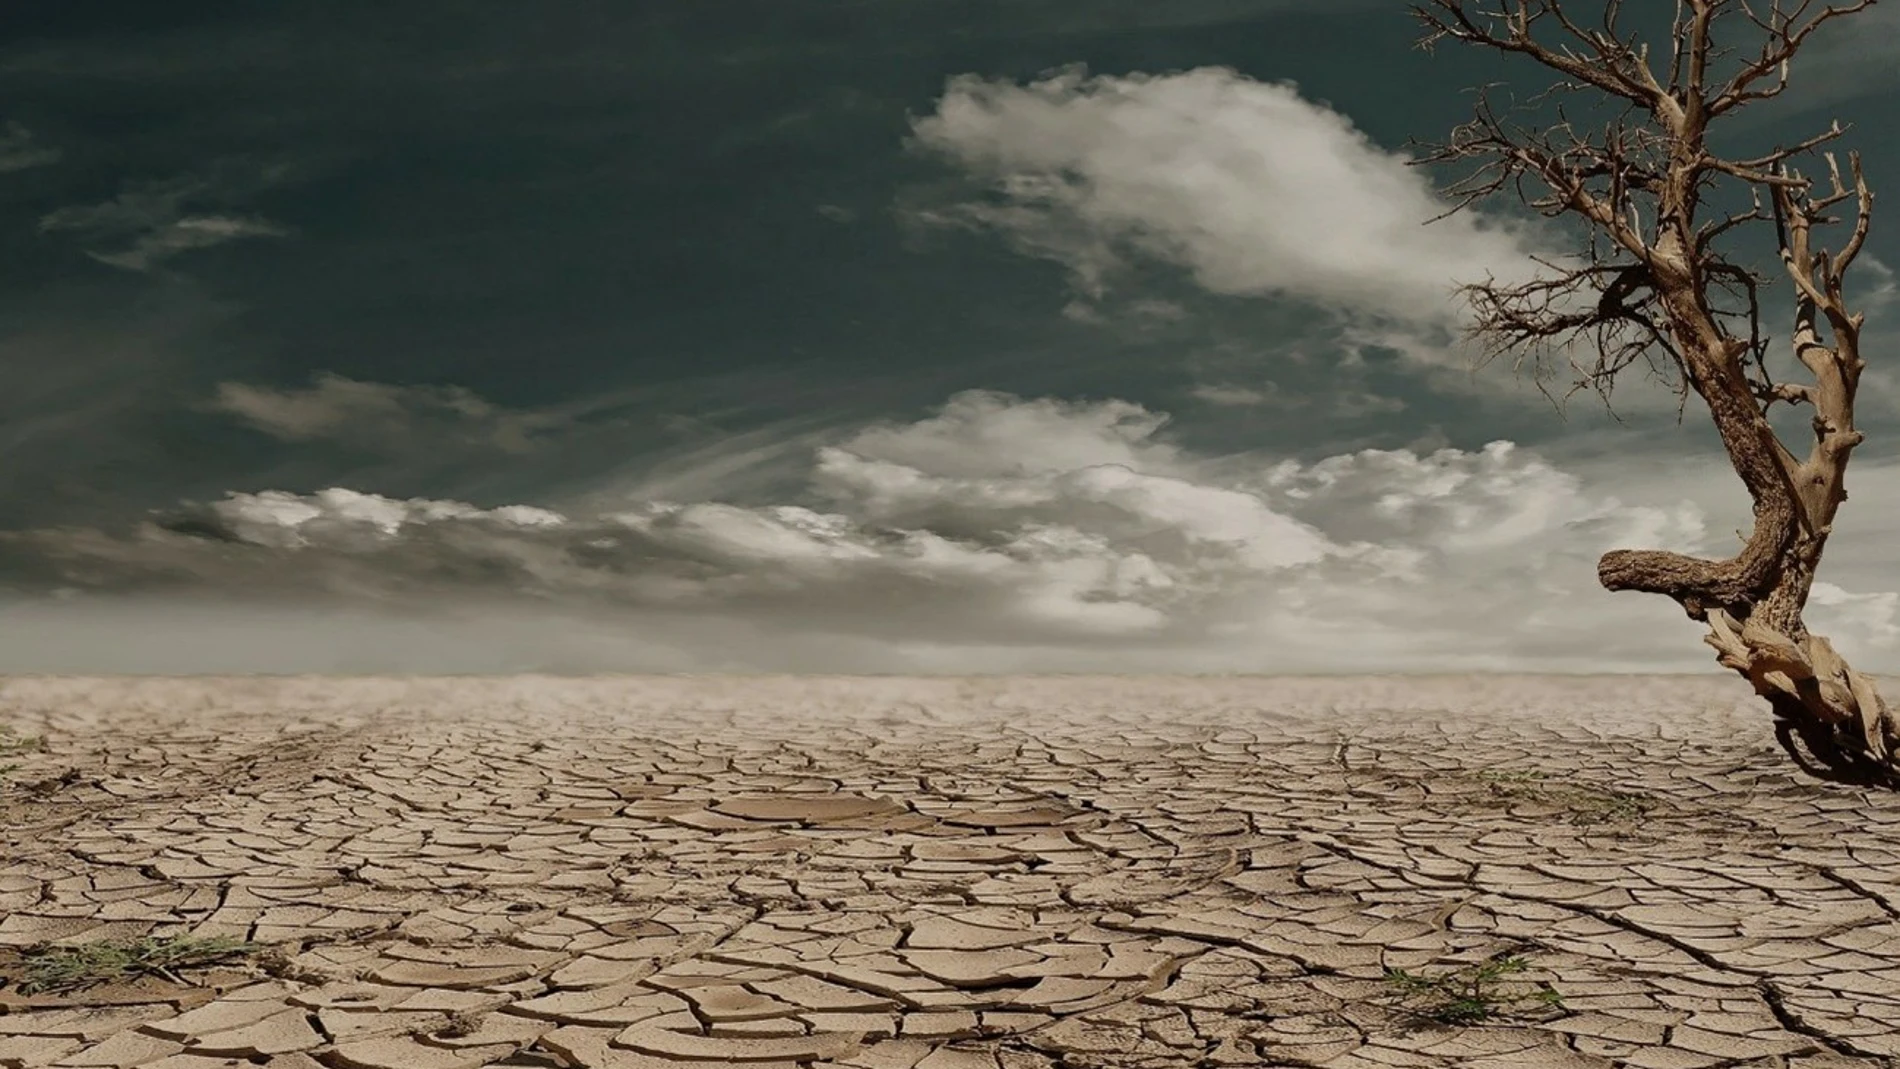 Tierra cuarteada por la sequía (photoshop)